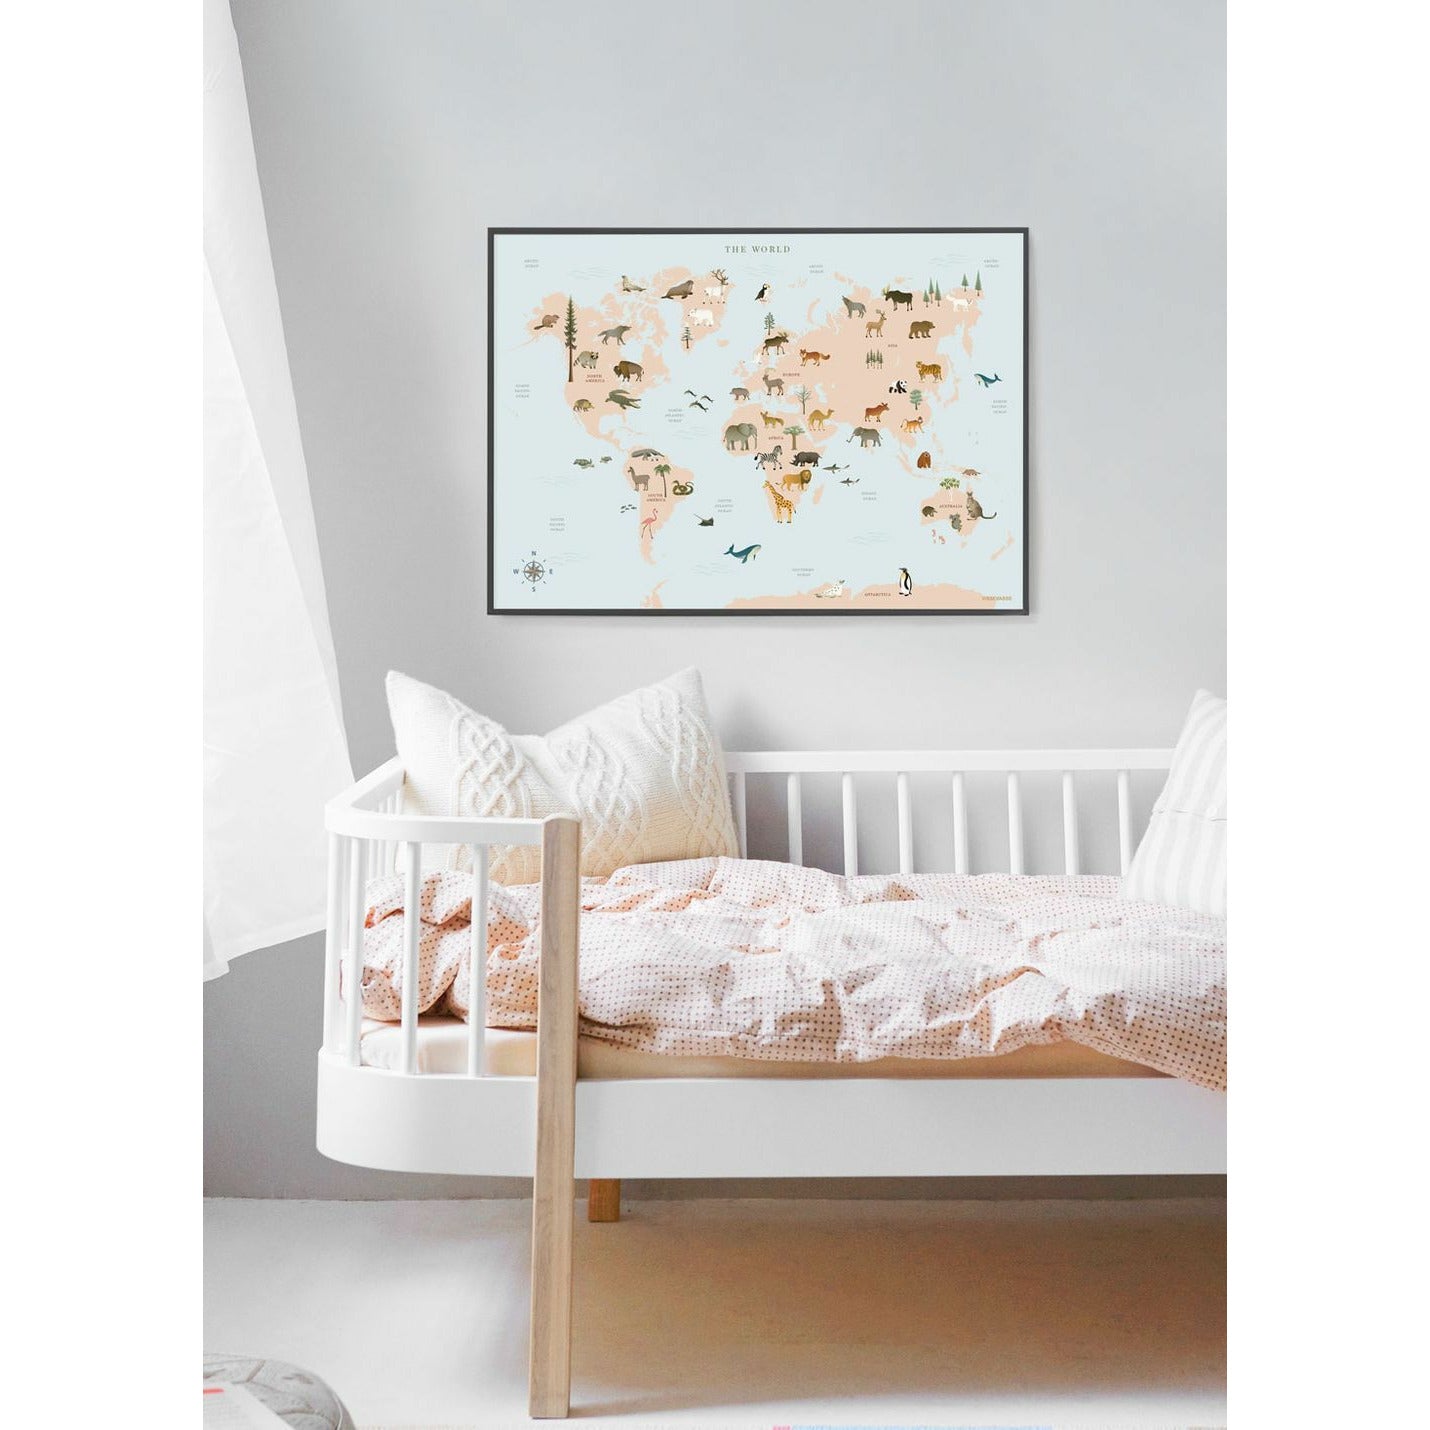 Vissevasse Världskarta med djur affisch, 30x40 cm